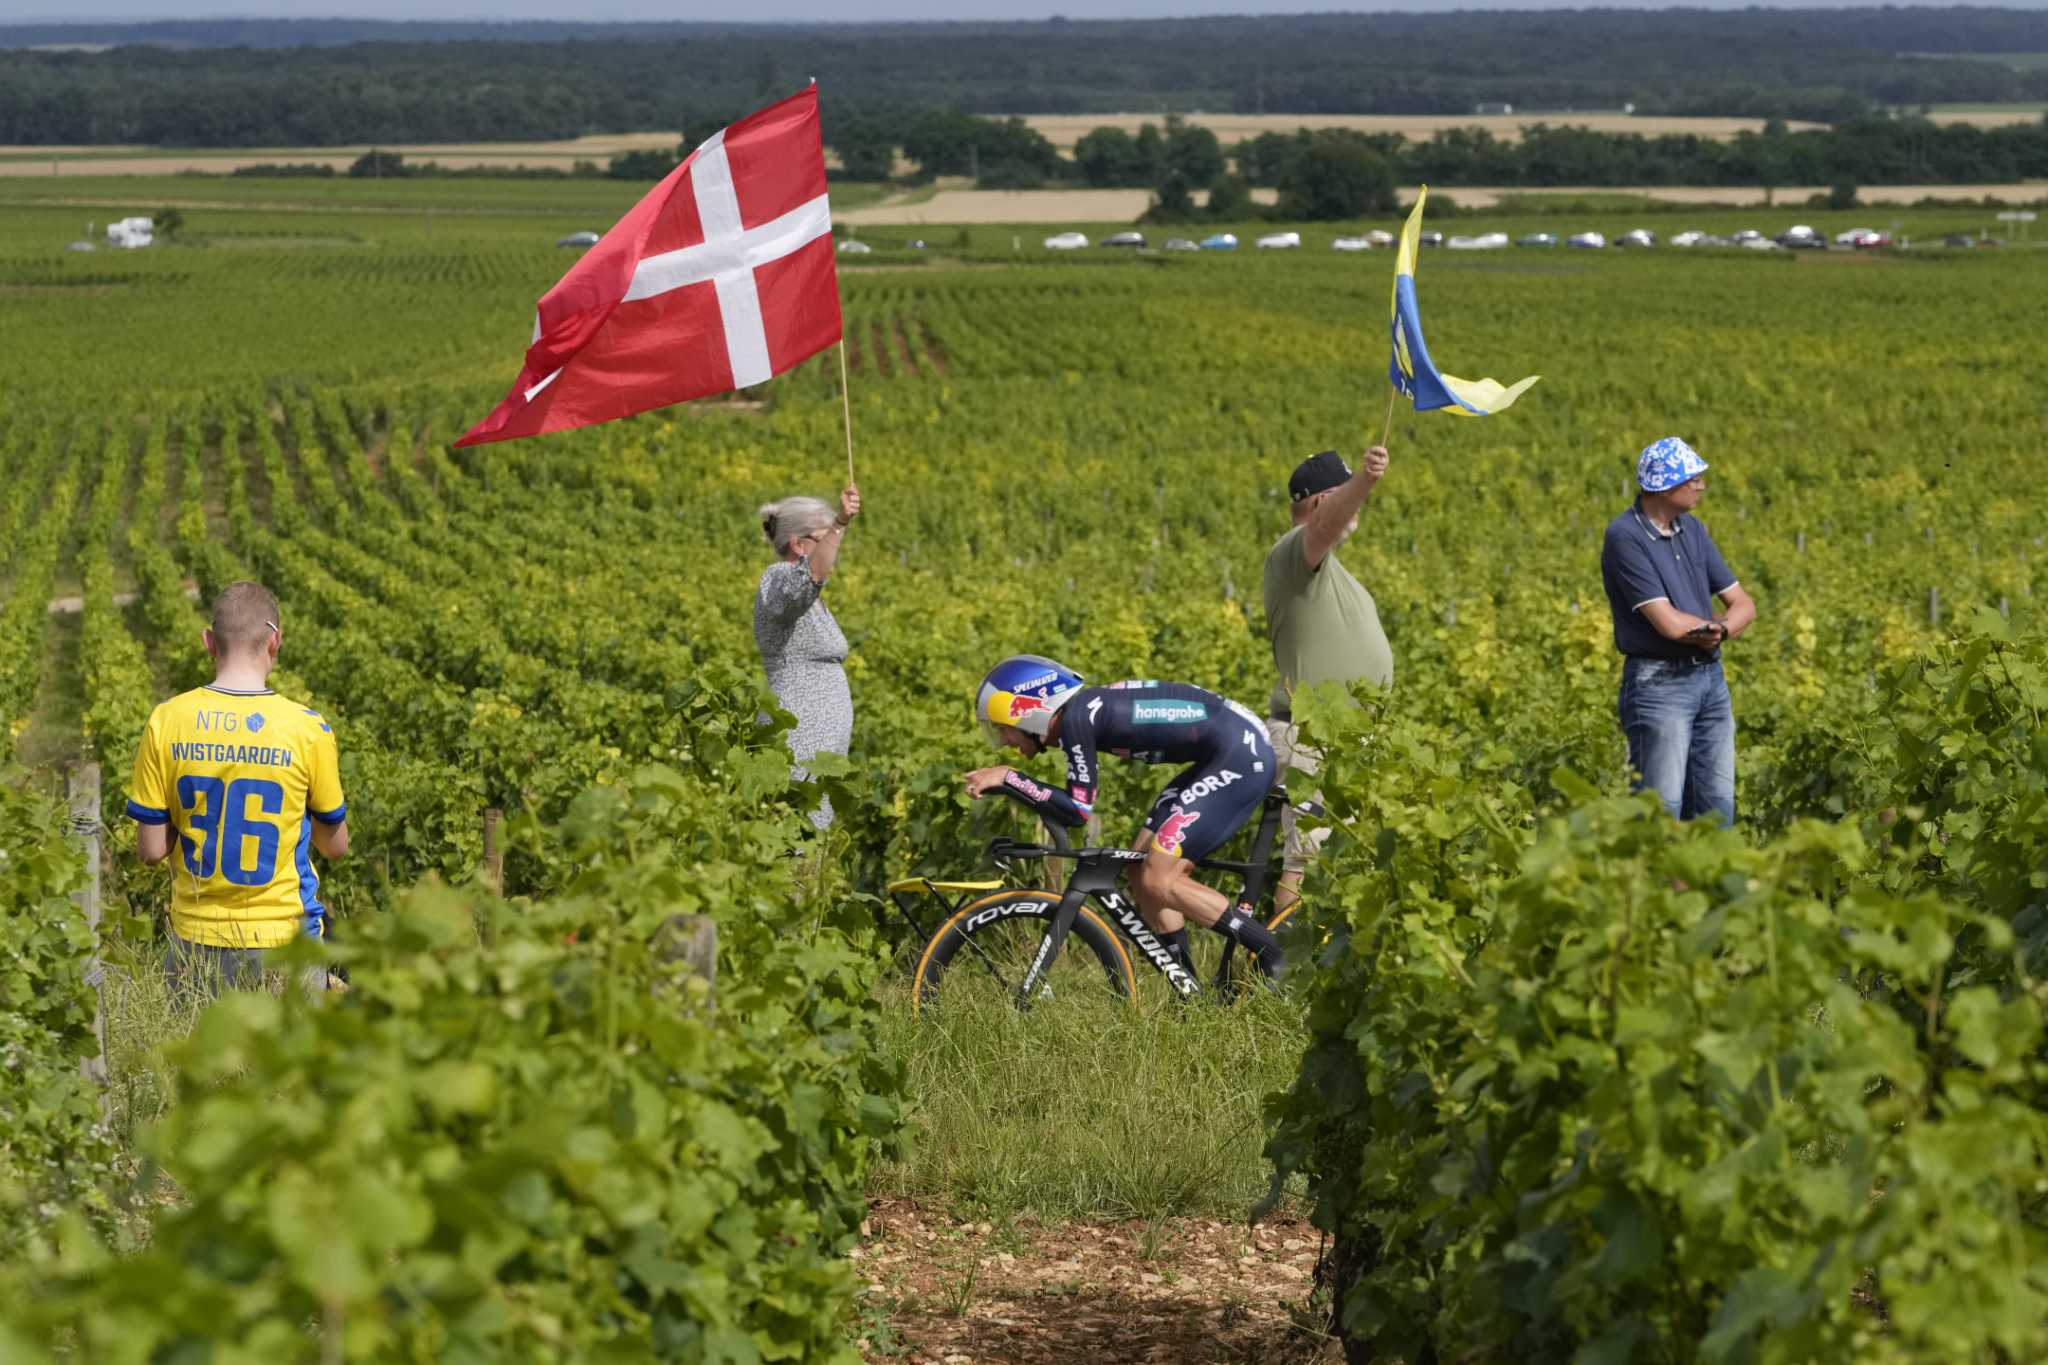 AP PHOTOS: A race to capture the Tour de France before it flies by